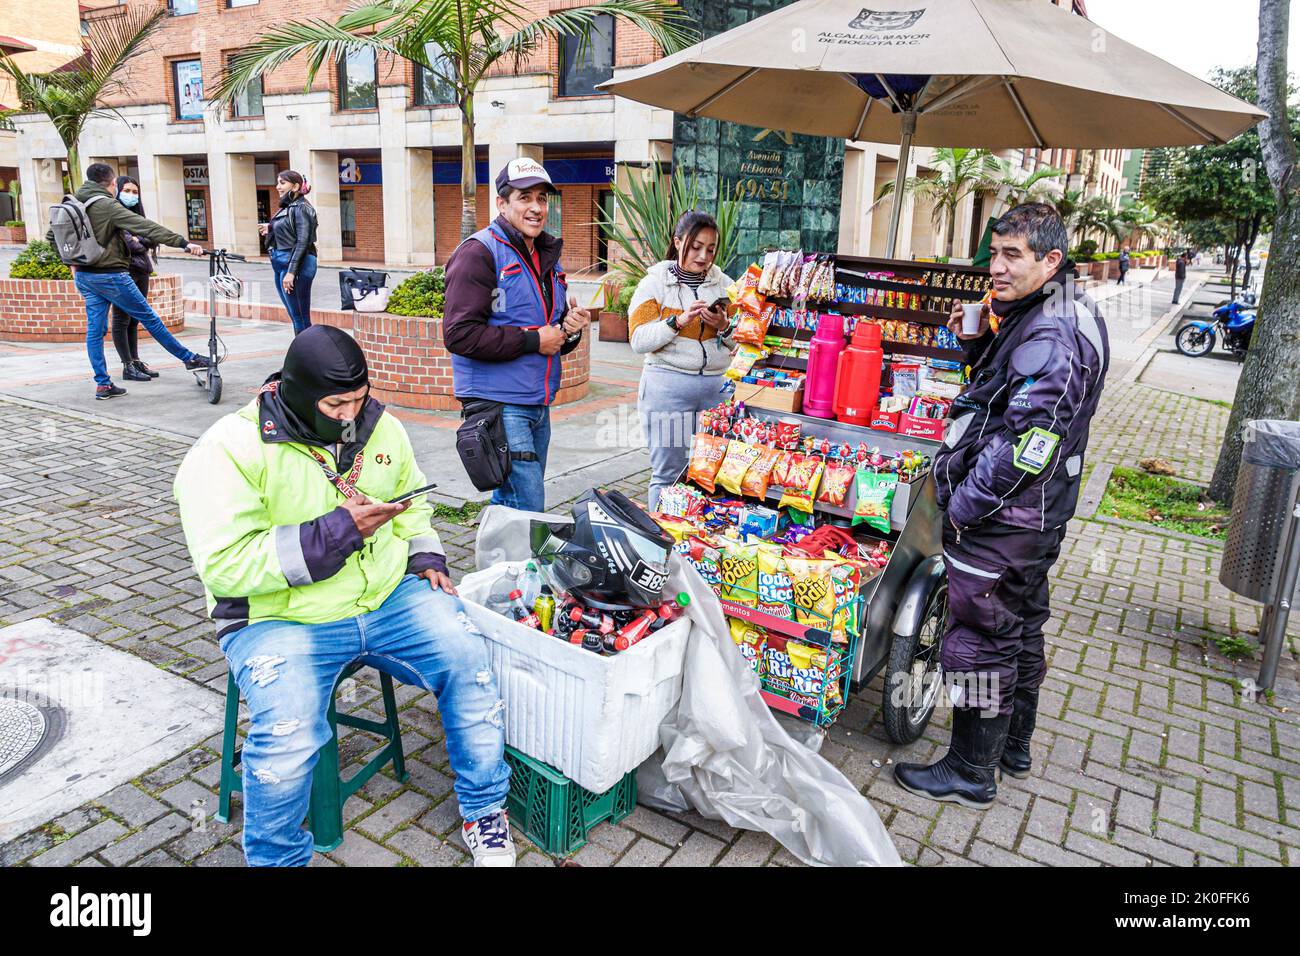 Bogota Colombie,Avenida El Dorado Calle 26,rue vendeurs de trottoir chariot,homme hommes femme femme femme,Colombiens colombiens Hispaniques hispaniques Banque D'Images